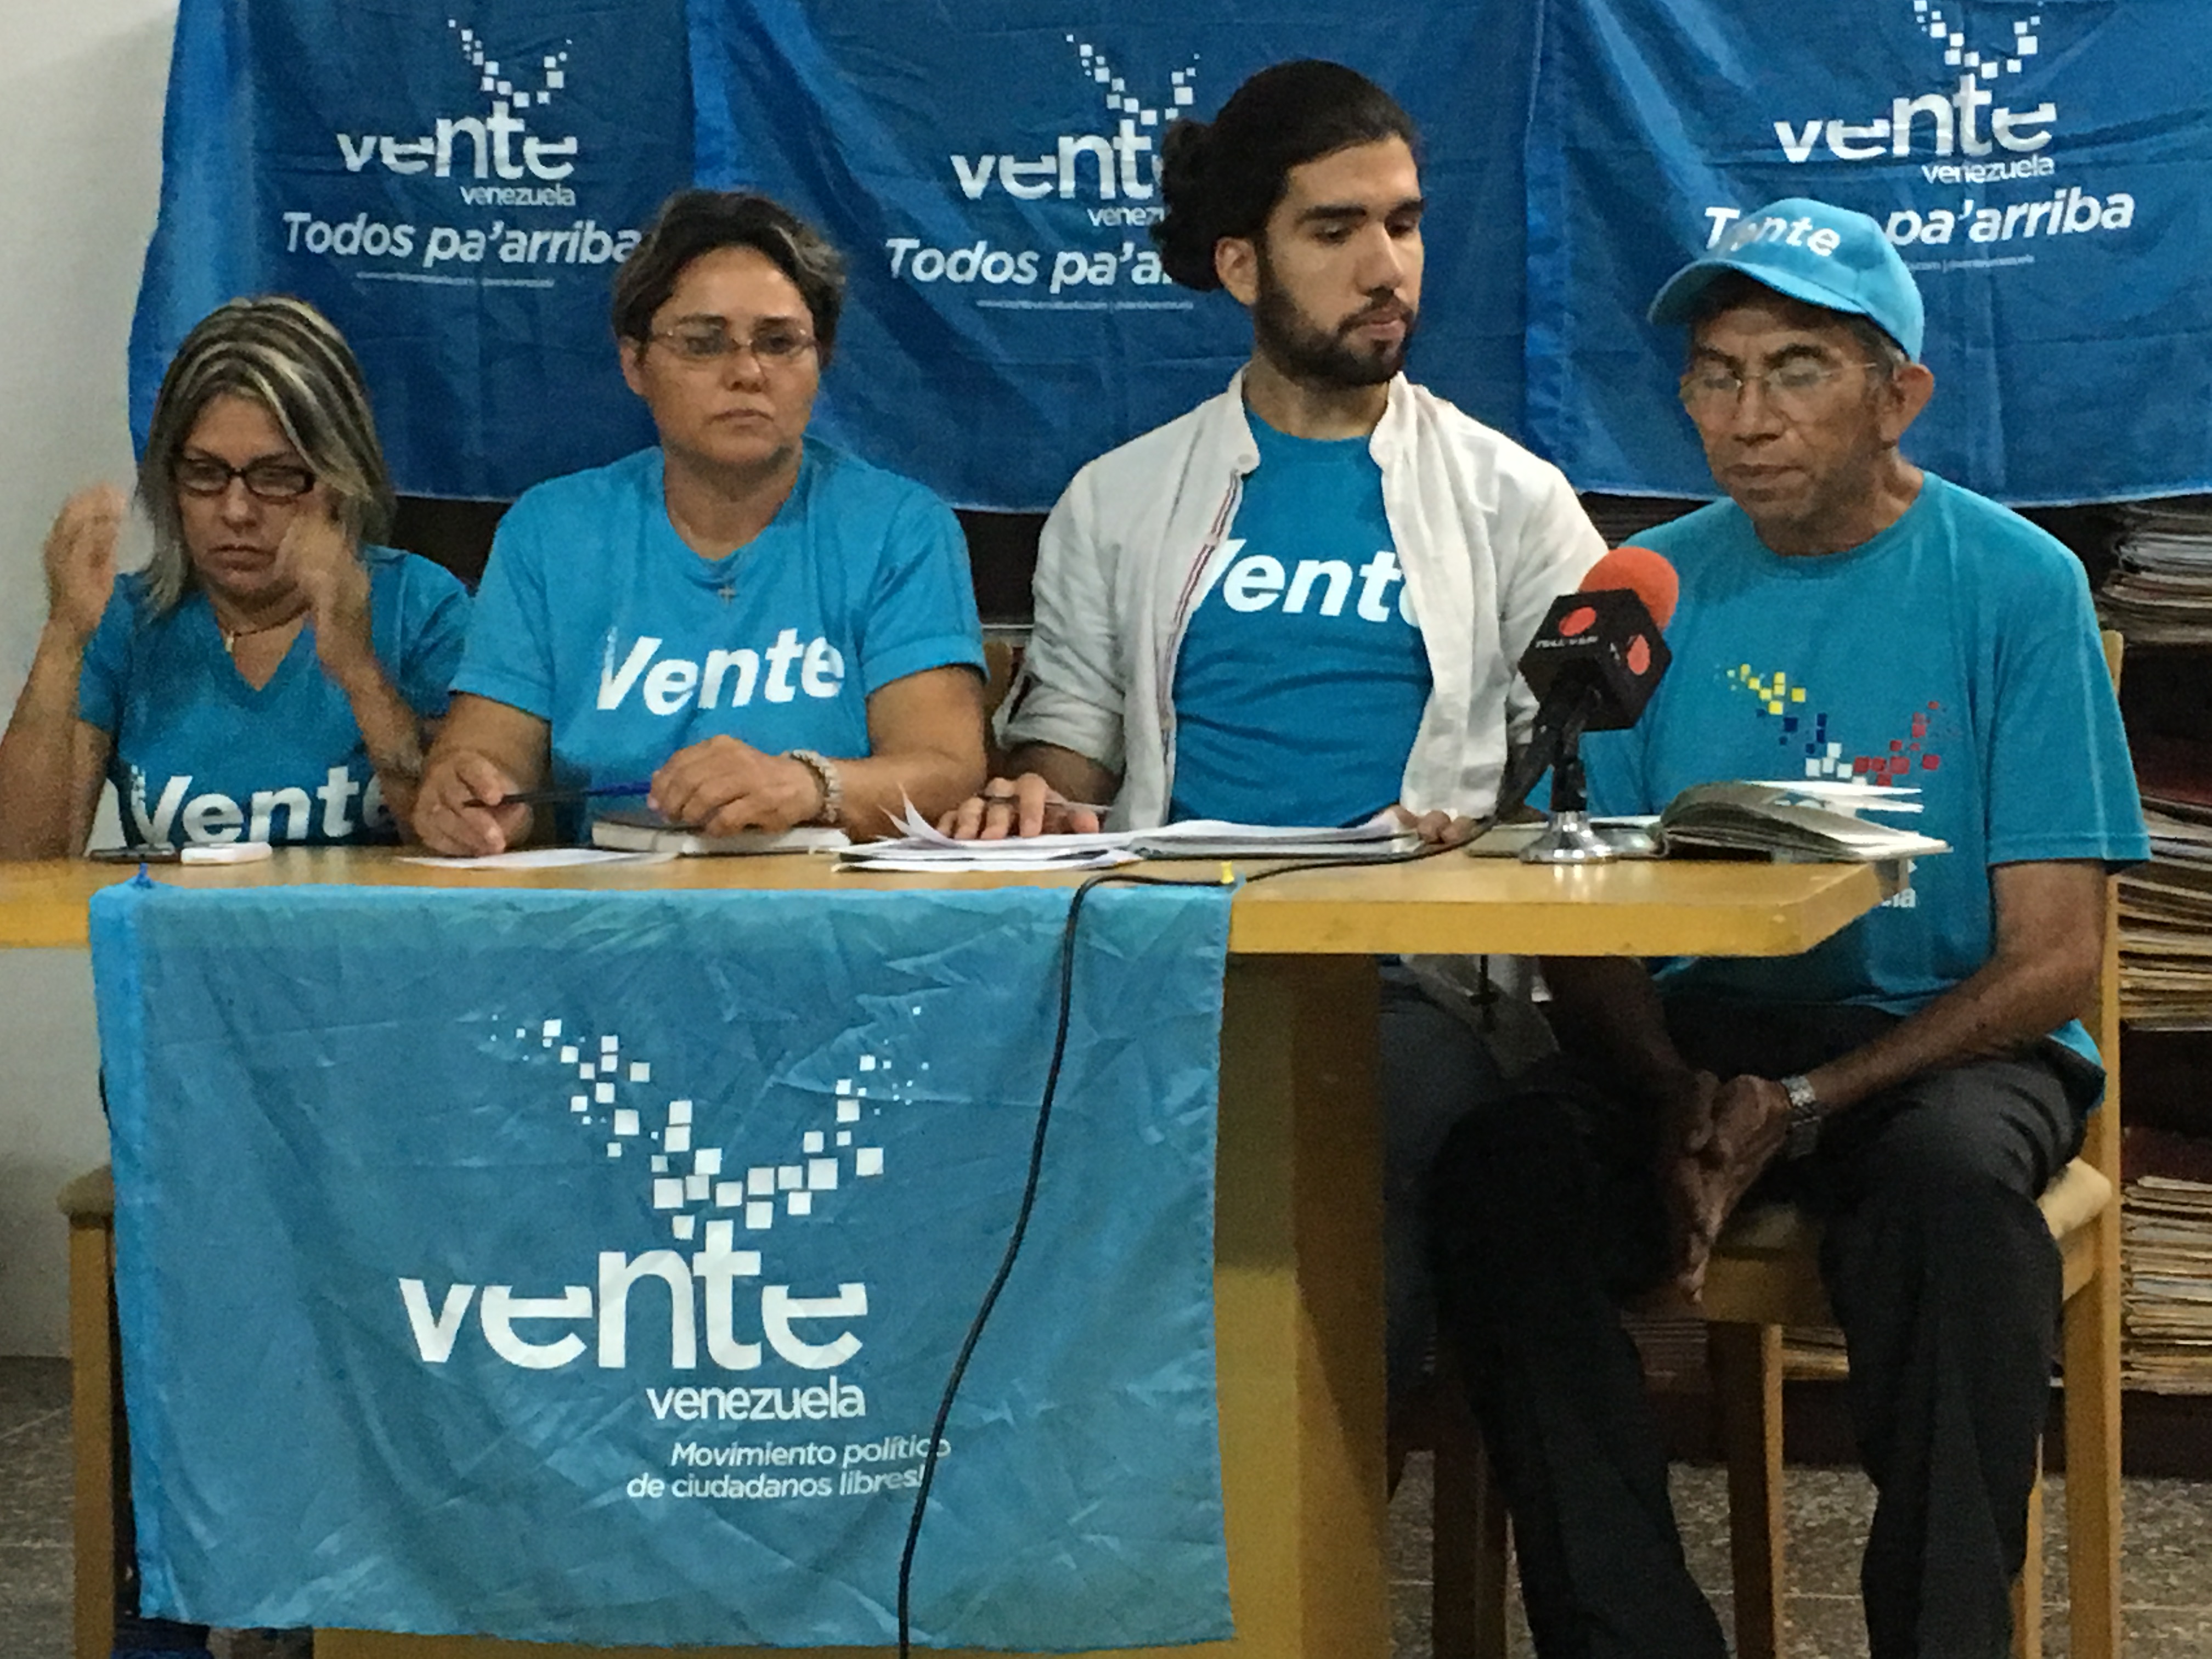 Vente Venezuela en Guárico: Después de falso diálogo se ratifica la ruta para derrotar la tiranía